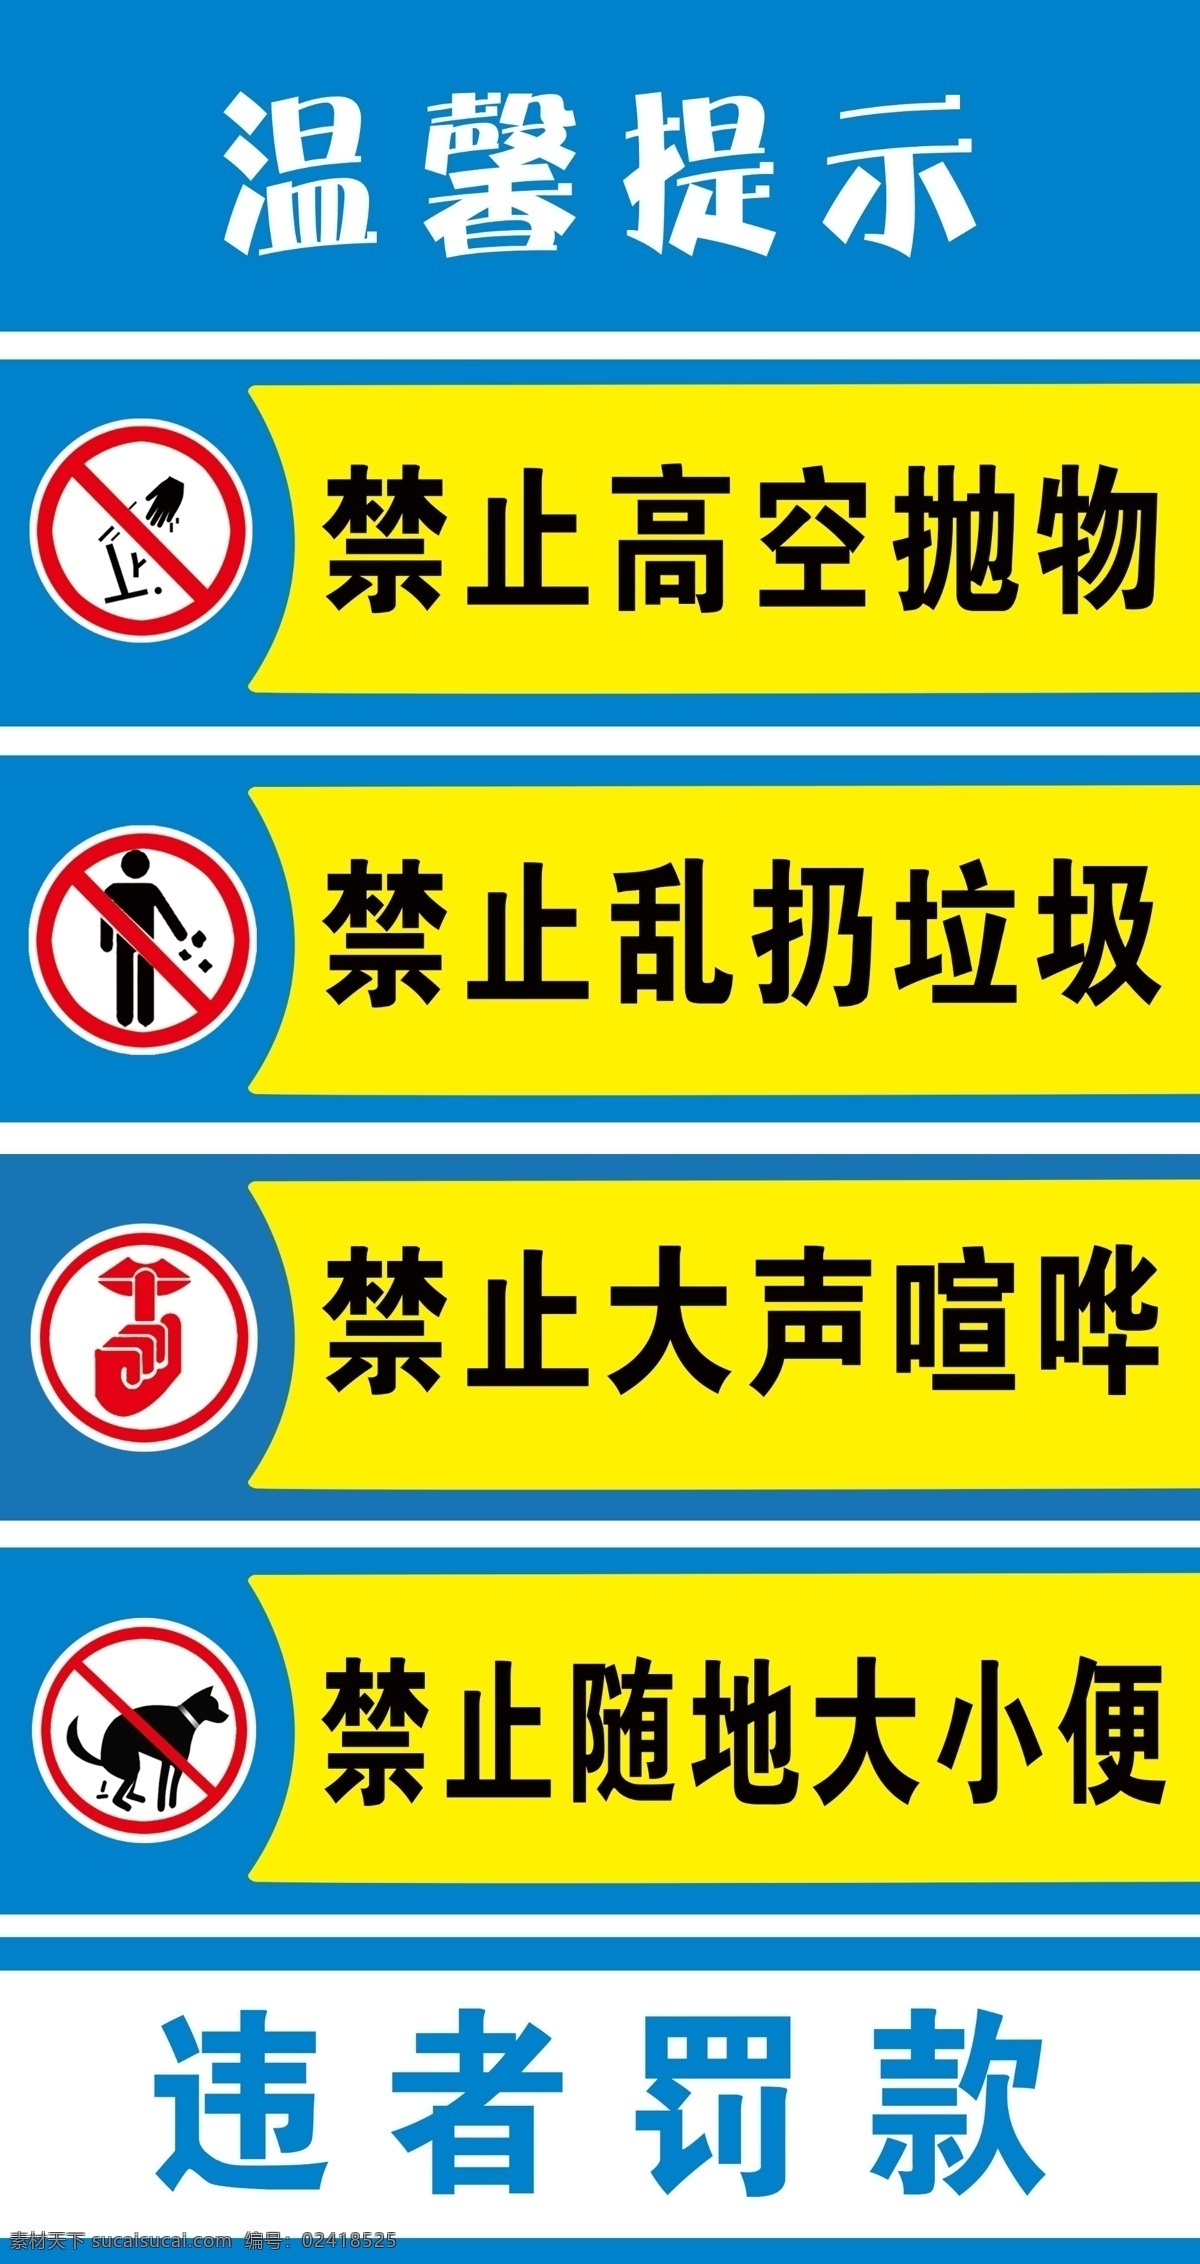 温馨提示 禁止高空抛物 禁止乱扔垃圾 禁止大声喧哗 禁止大小便 罚款 提示牌 标志 蓝色 黄色